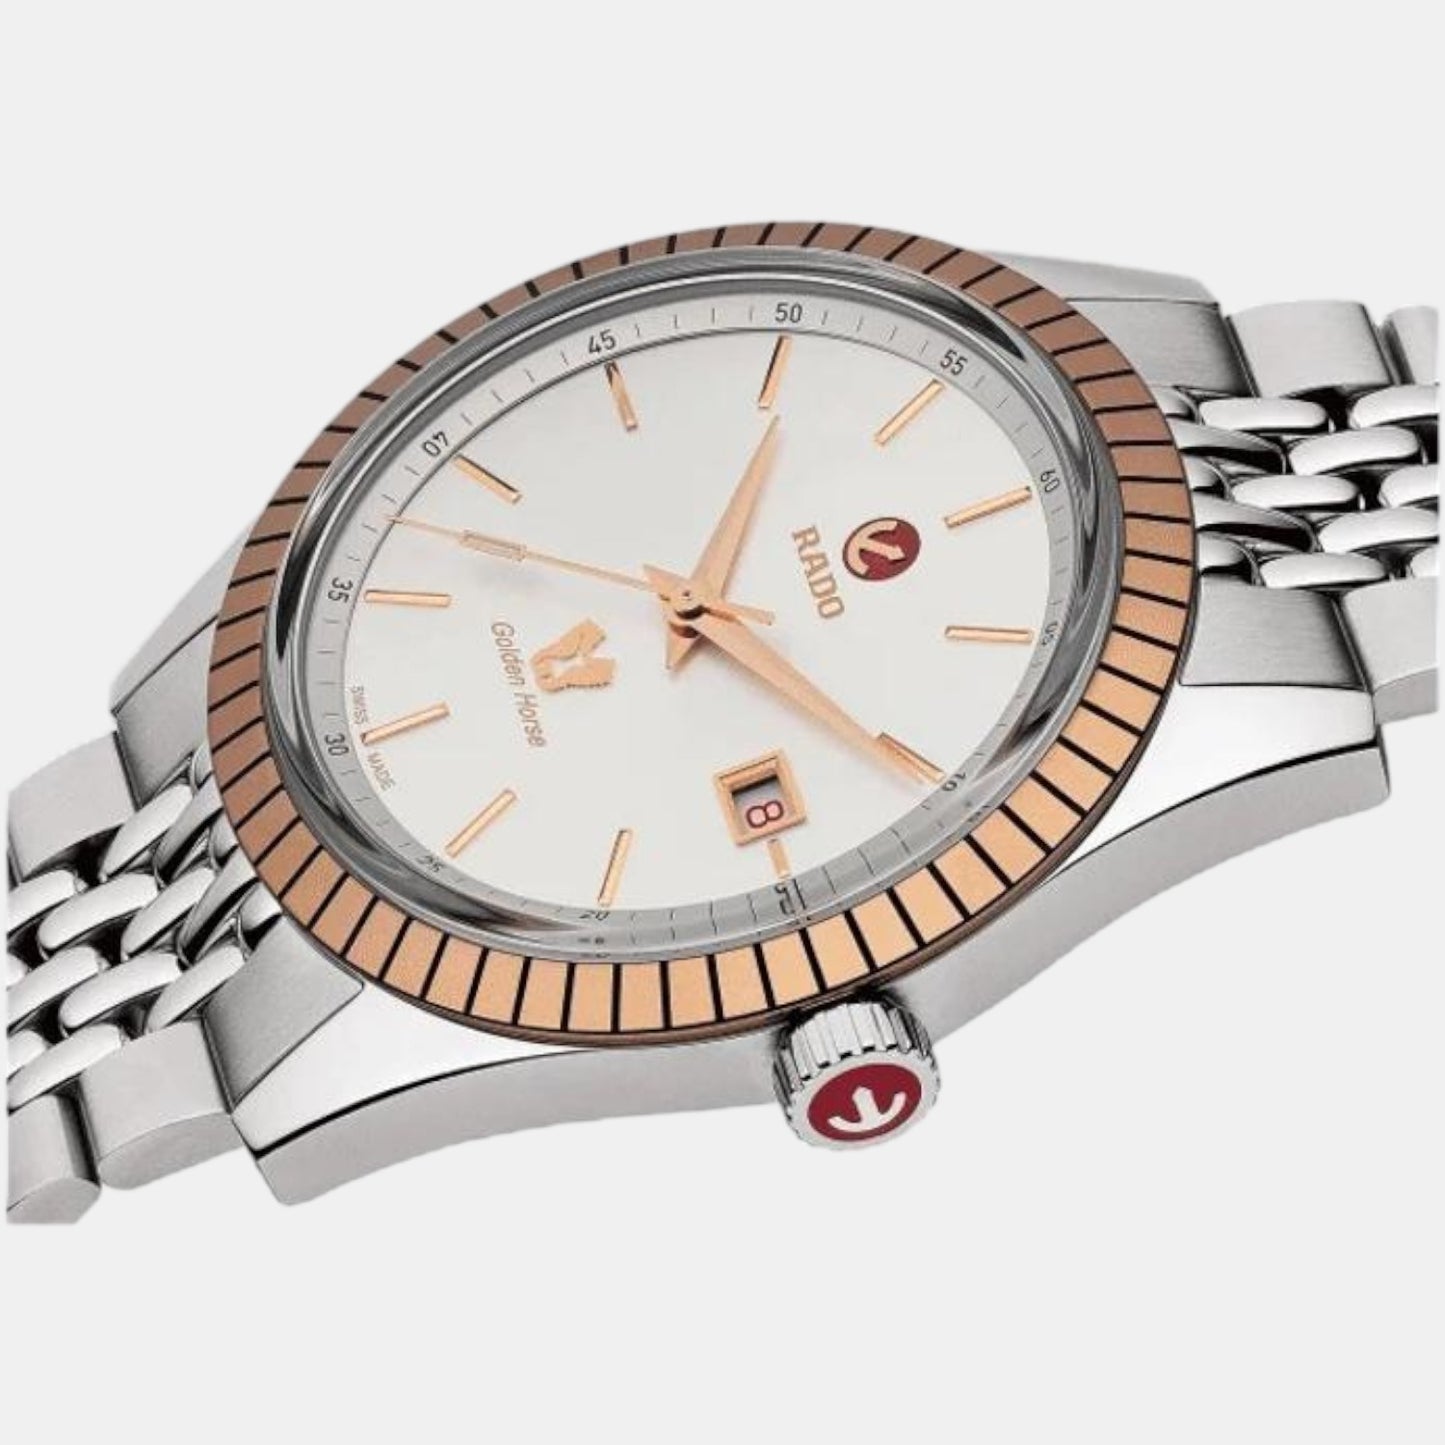 rado-stainless-steel-white-analog-men-watch-r33100013